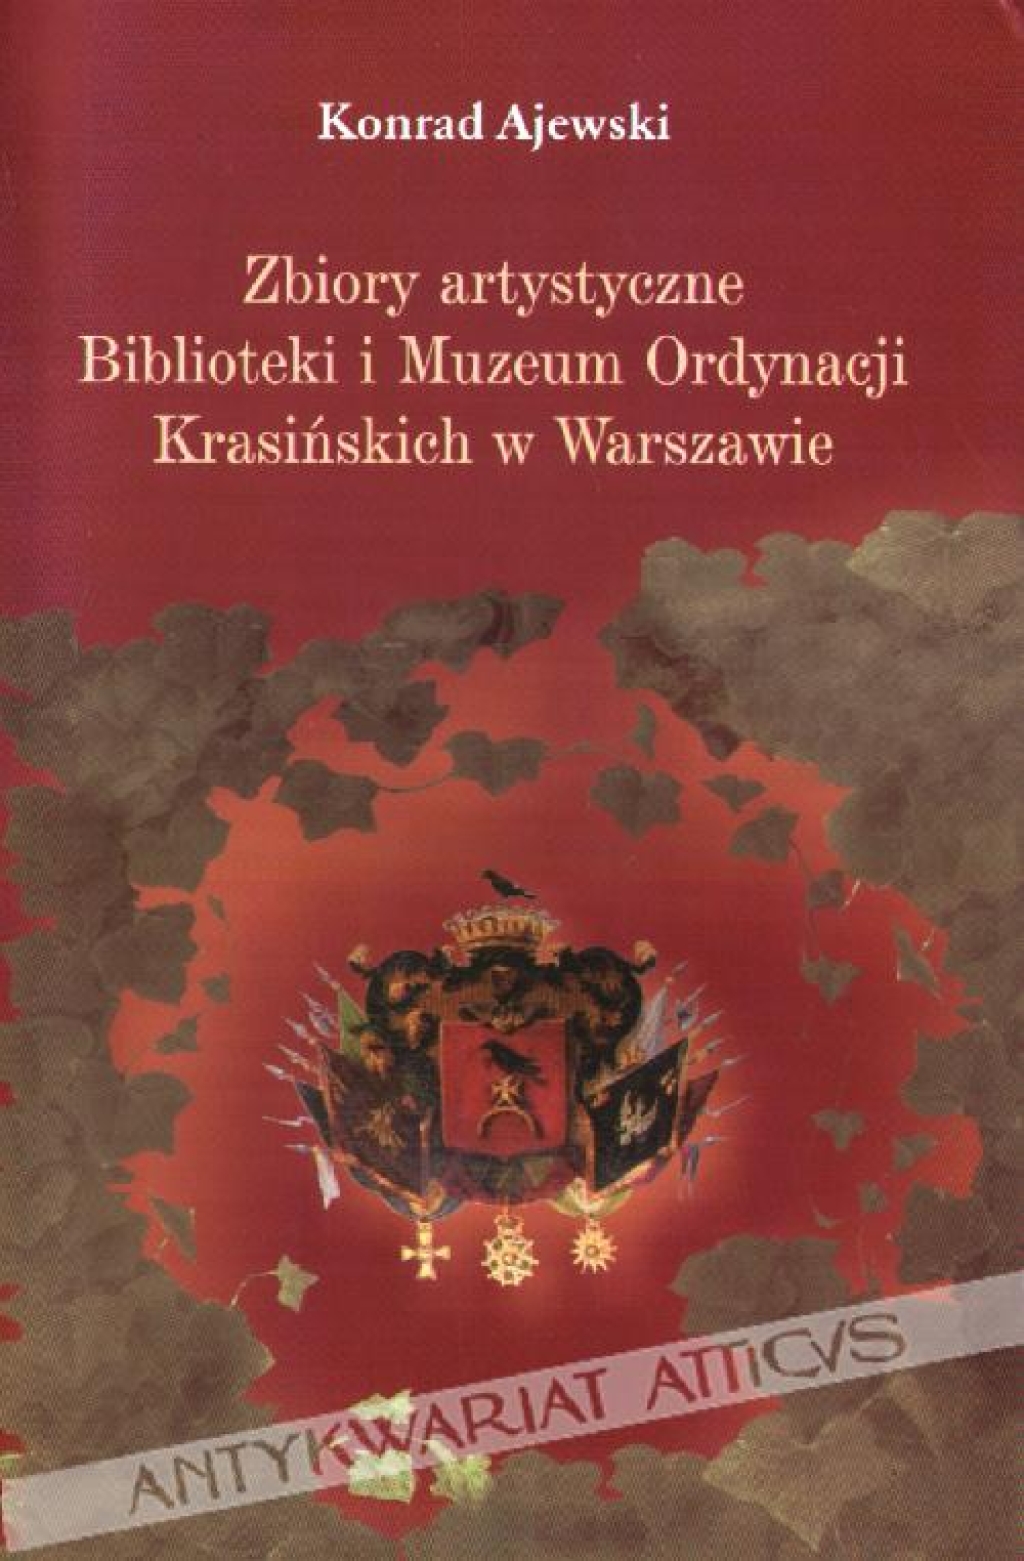 Zbiory artystyczne Biblioteki i Muzeum Ordynacji Krasińskich w Warszawie. Losy, ludzie, znaczenie